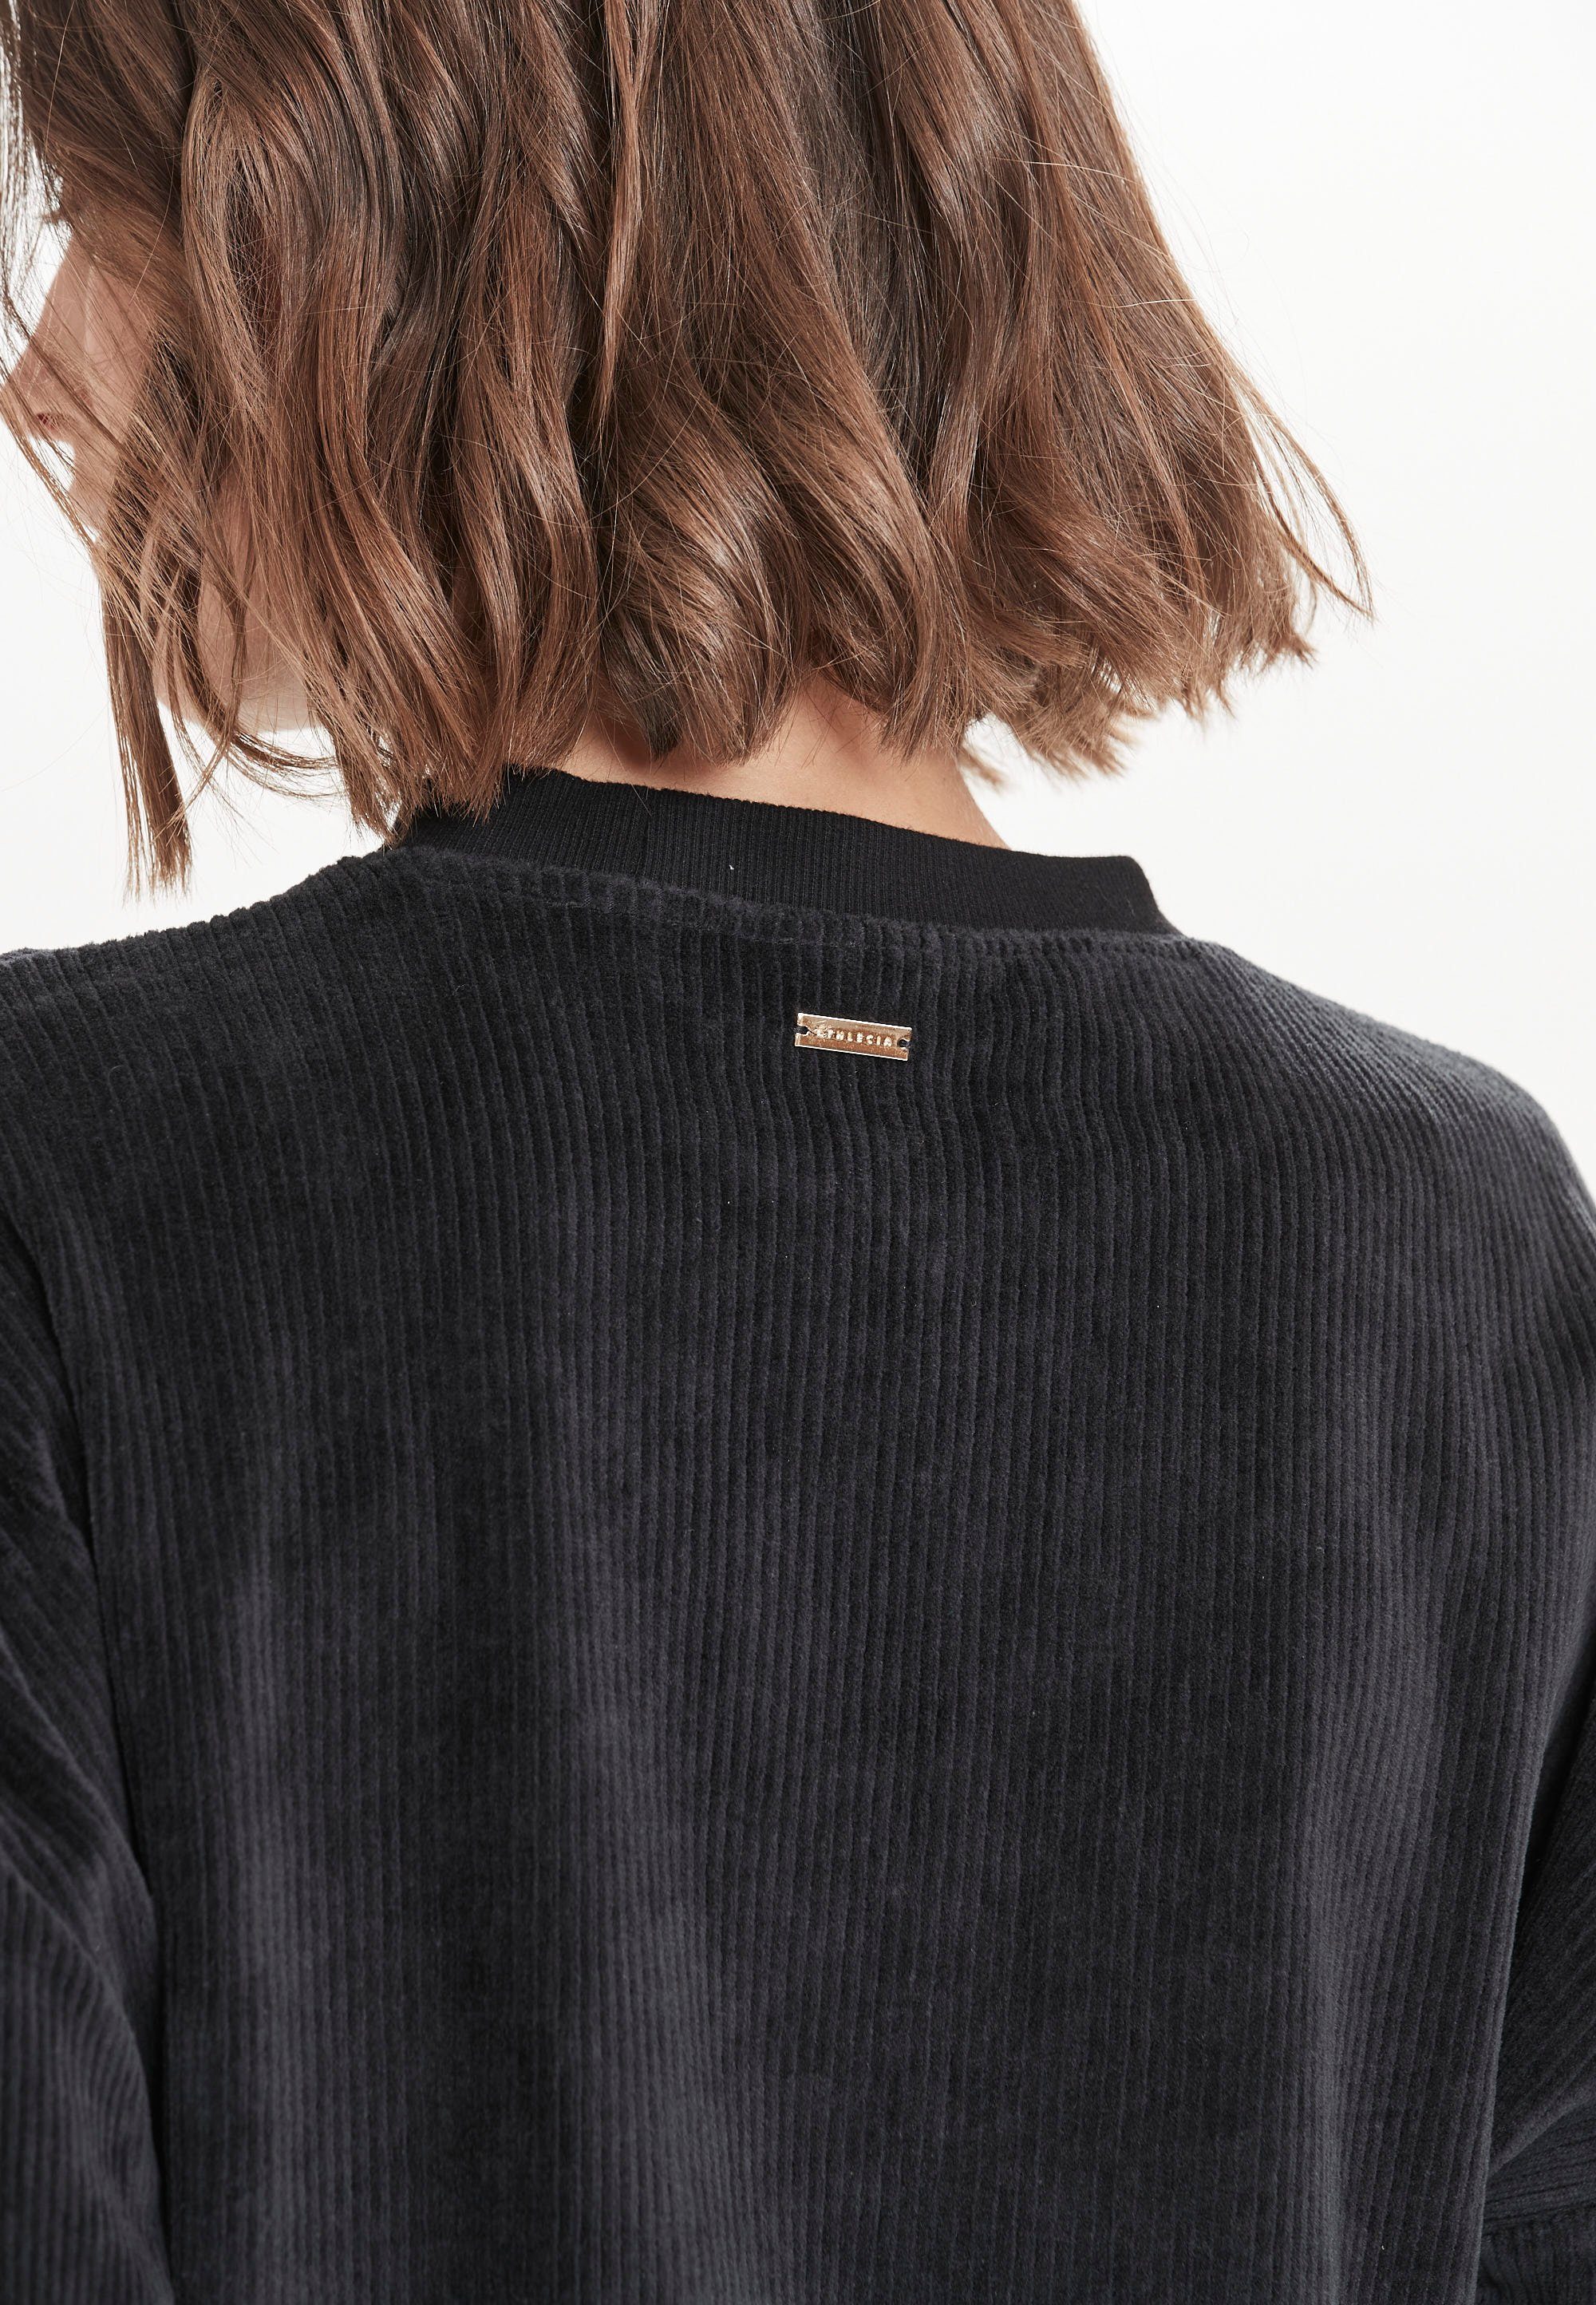 Marlie trendigen Sweatshirt schwarz ATHLECIA Cord-Look im